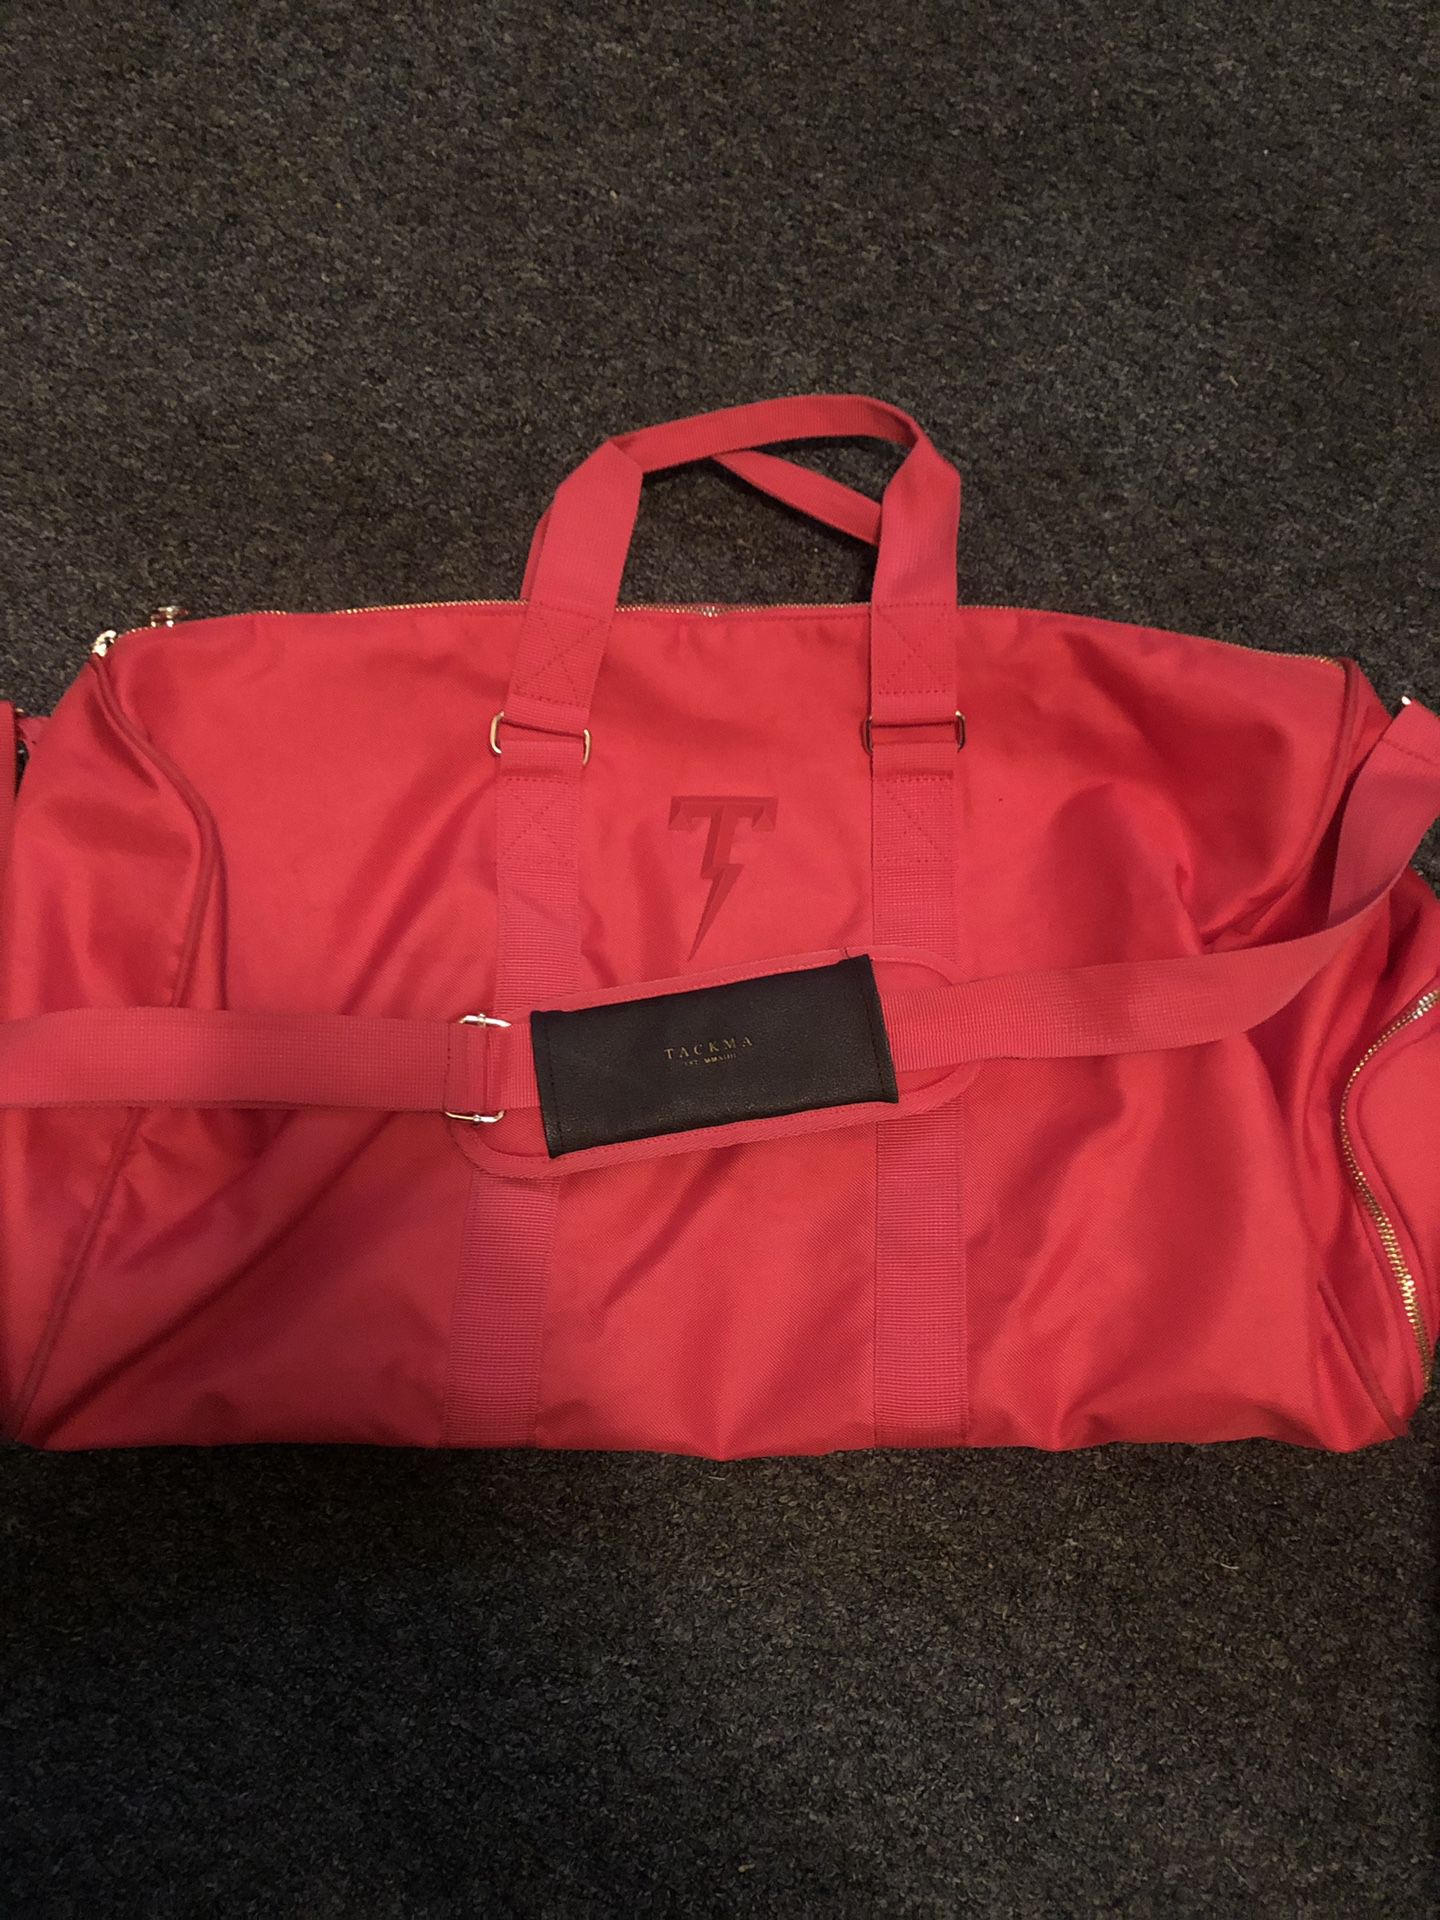 Red Tackma Duffle Bag 1 of 1 Sample